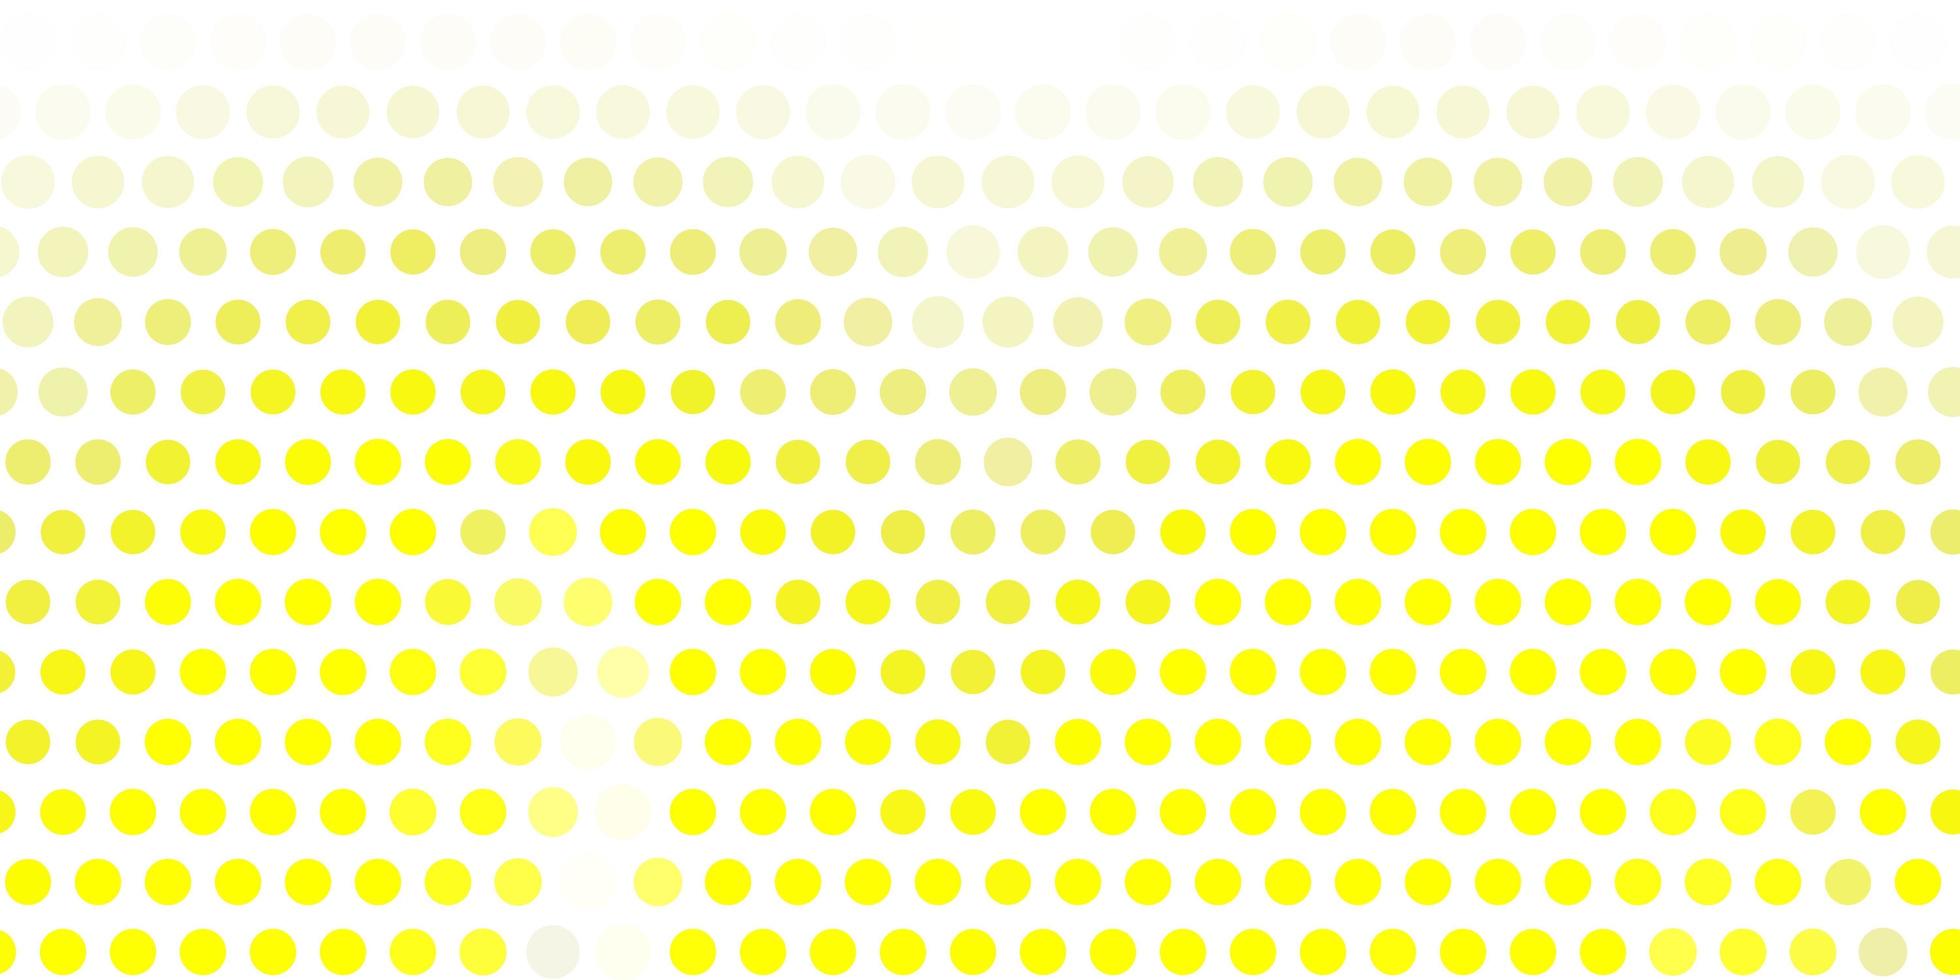 ljus gul vektor bakgrund med bubblor.